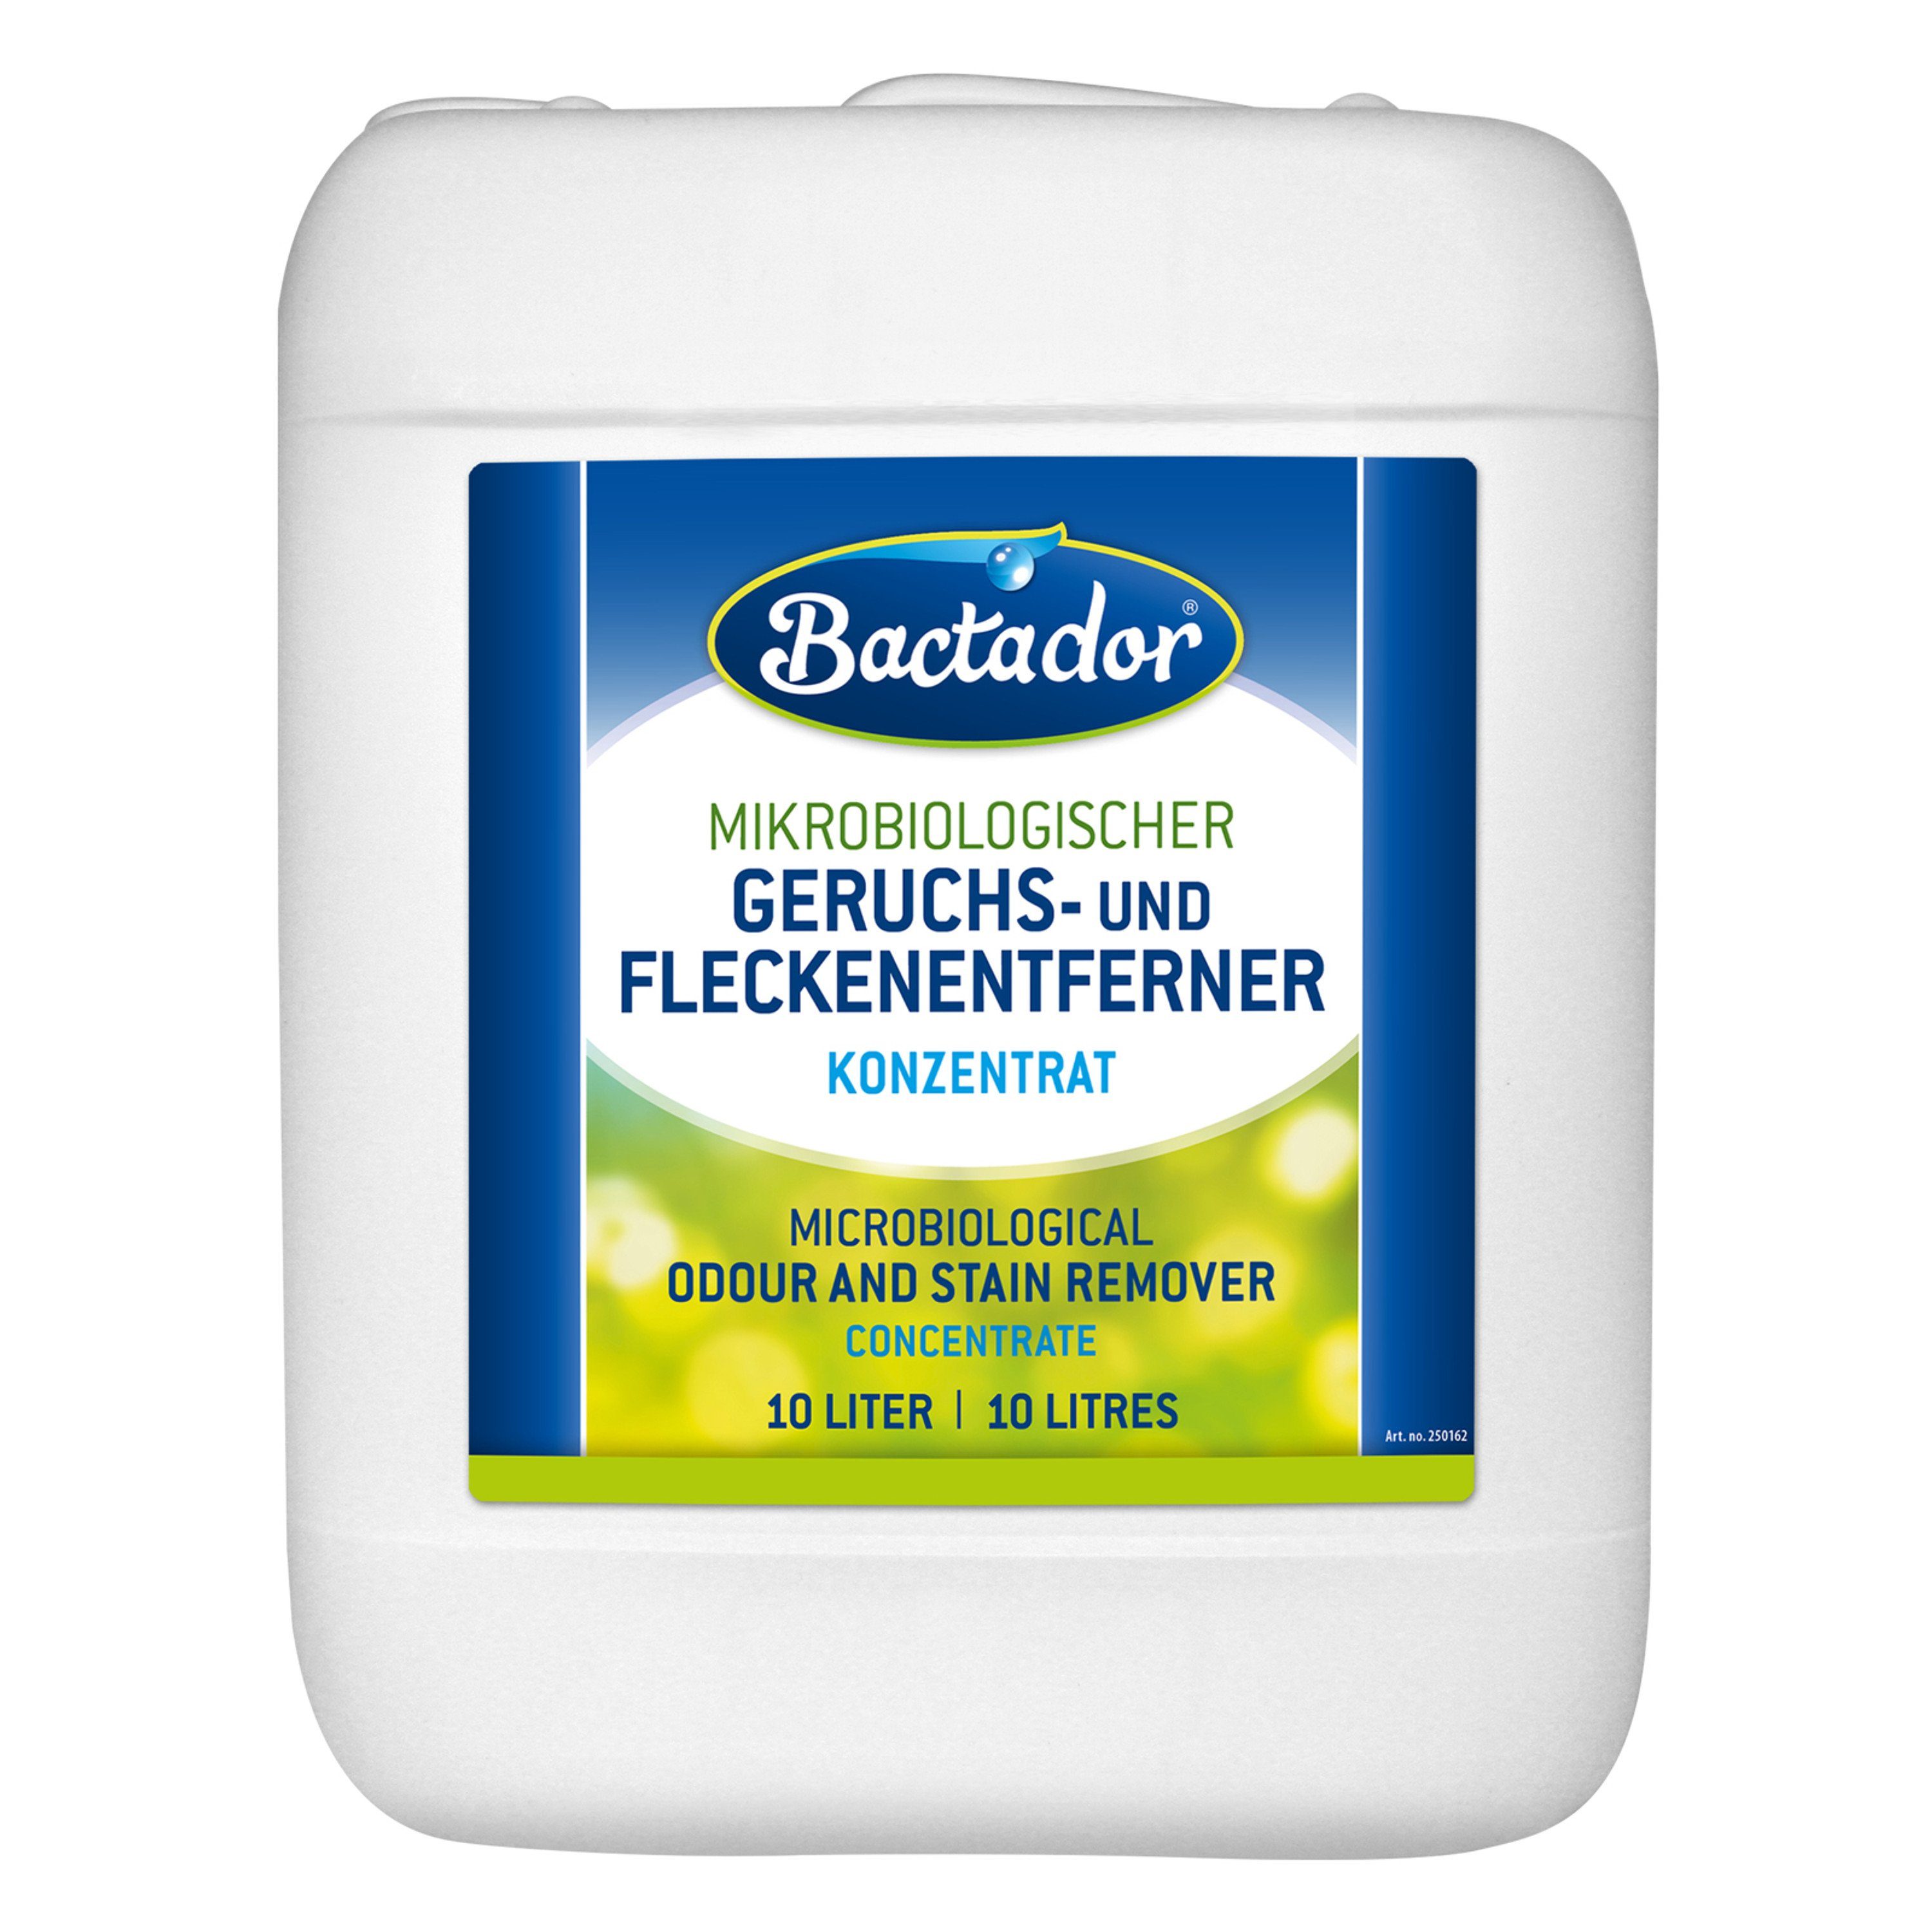 Bactador Bactador Geruchs- und Fleckenentferner Konzentrat +++ 10